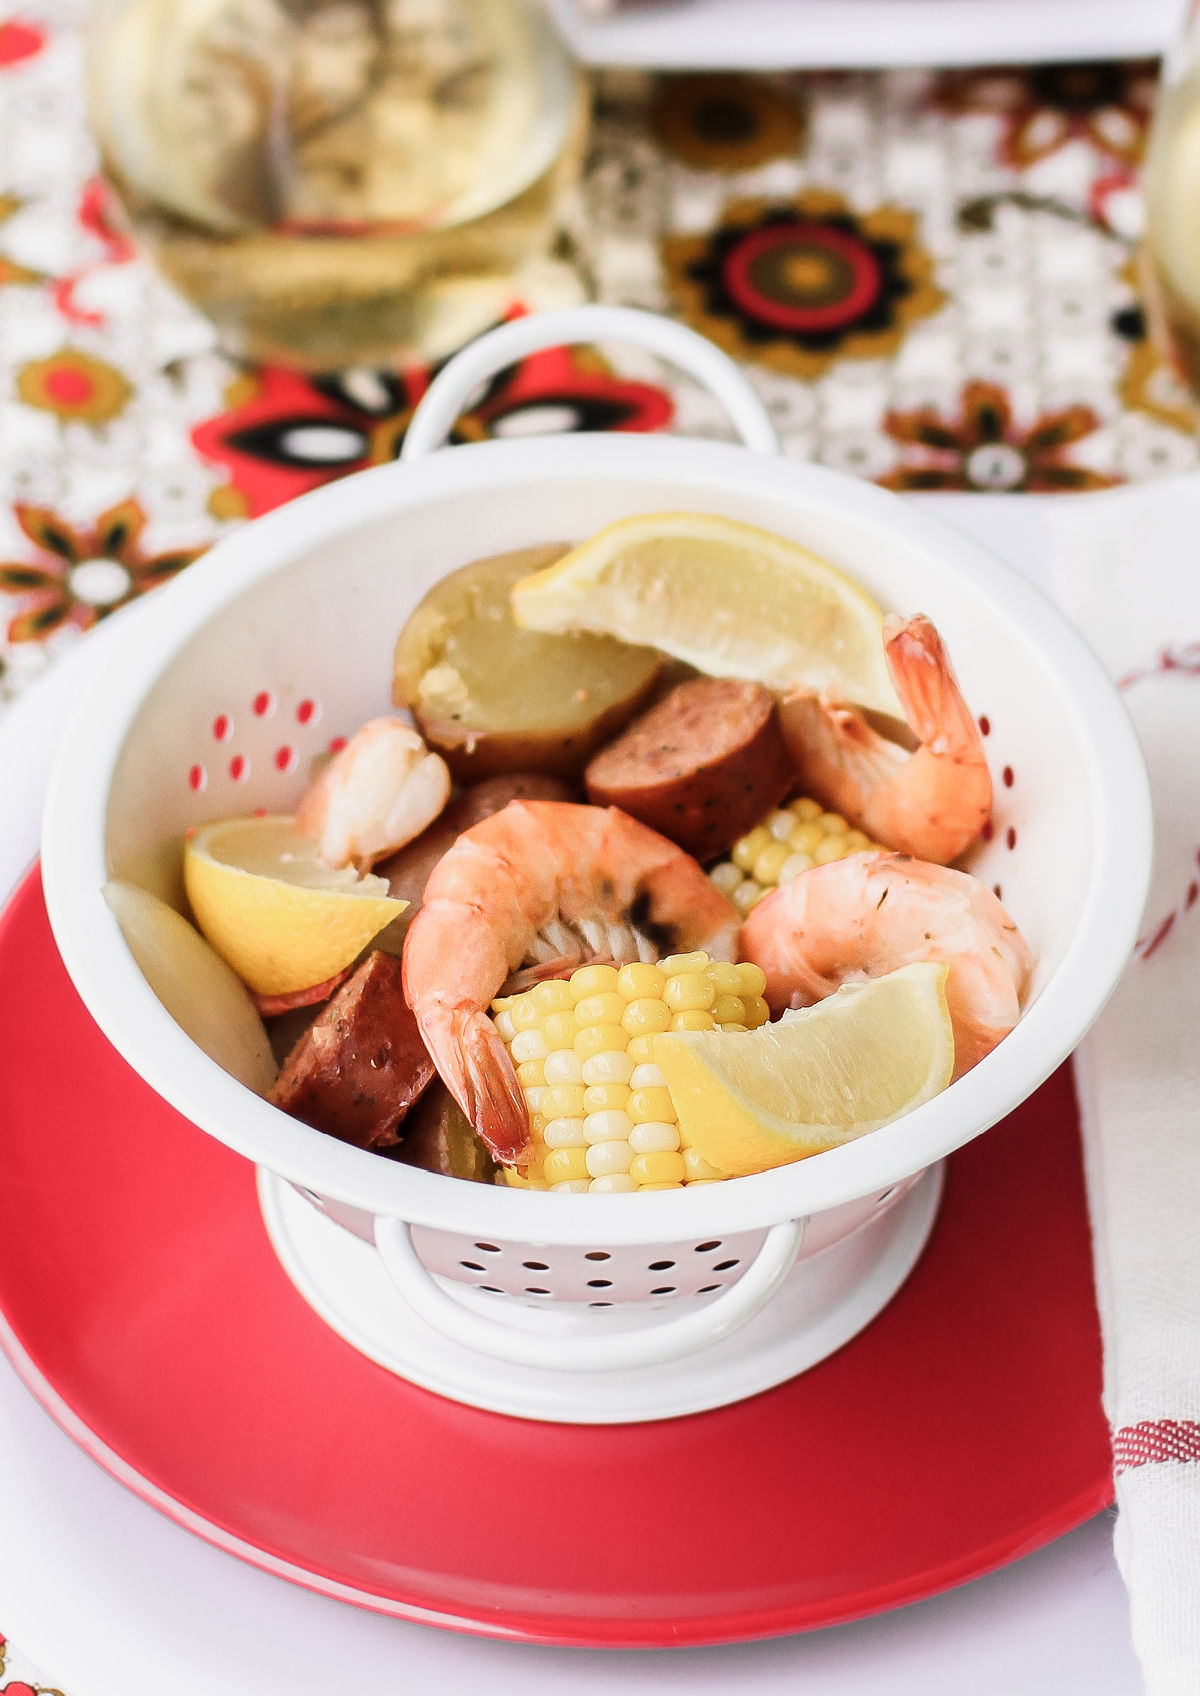 shrimp boil ingredients served in white colander on red plate.